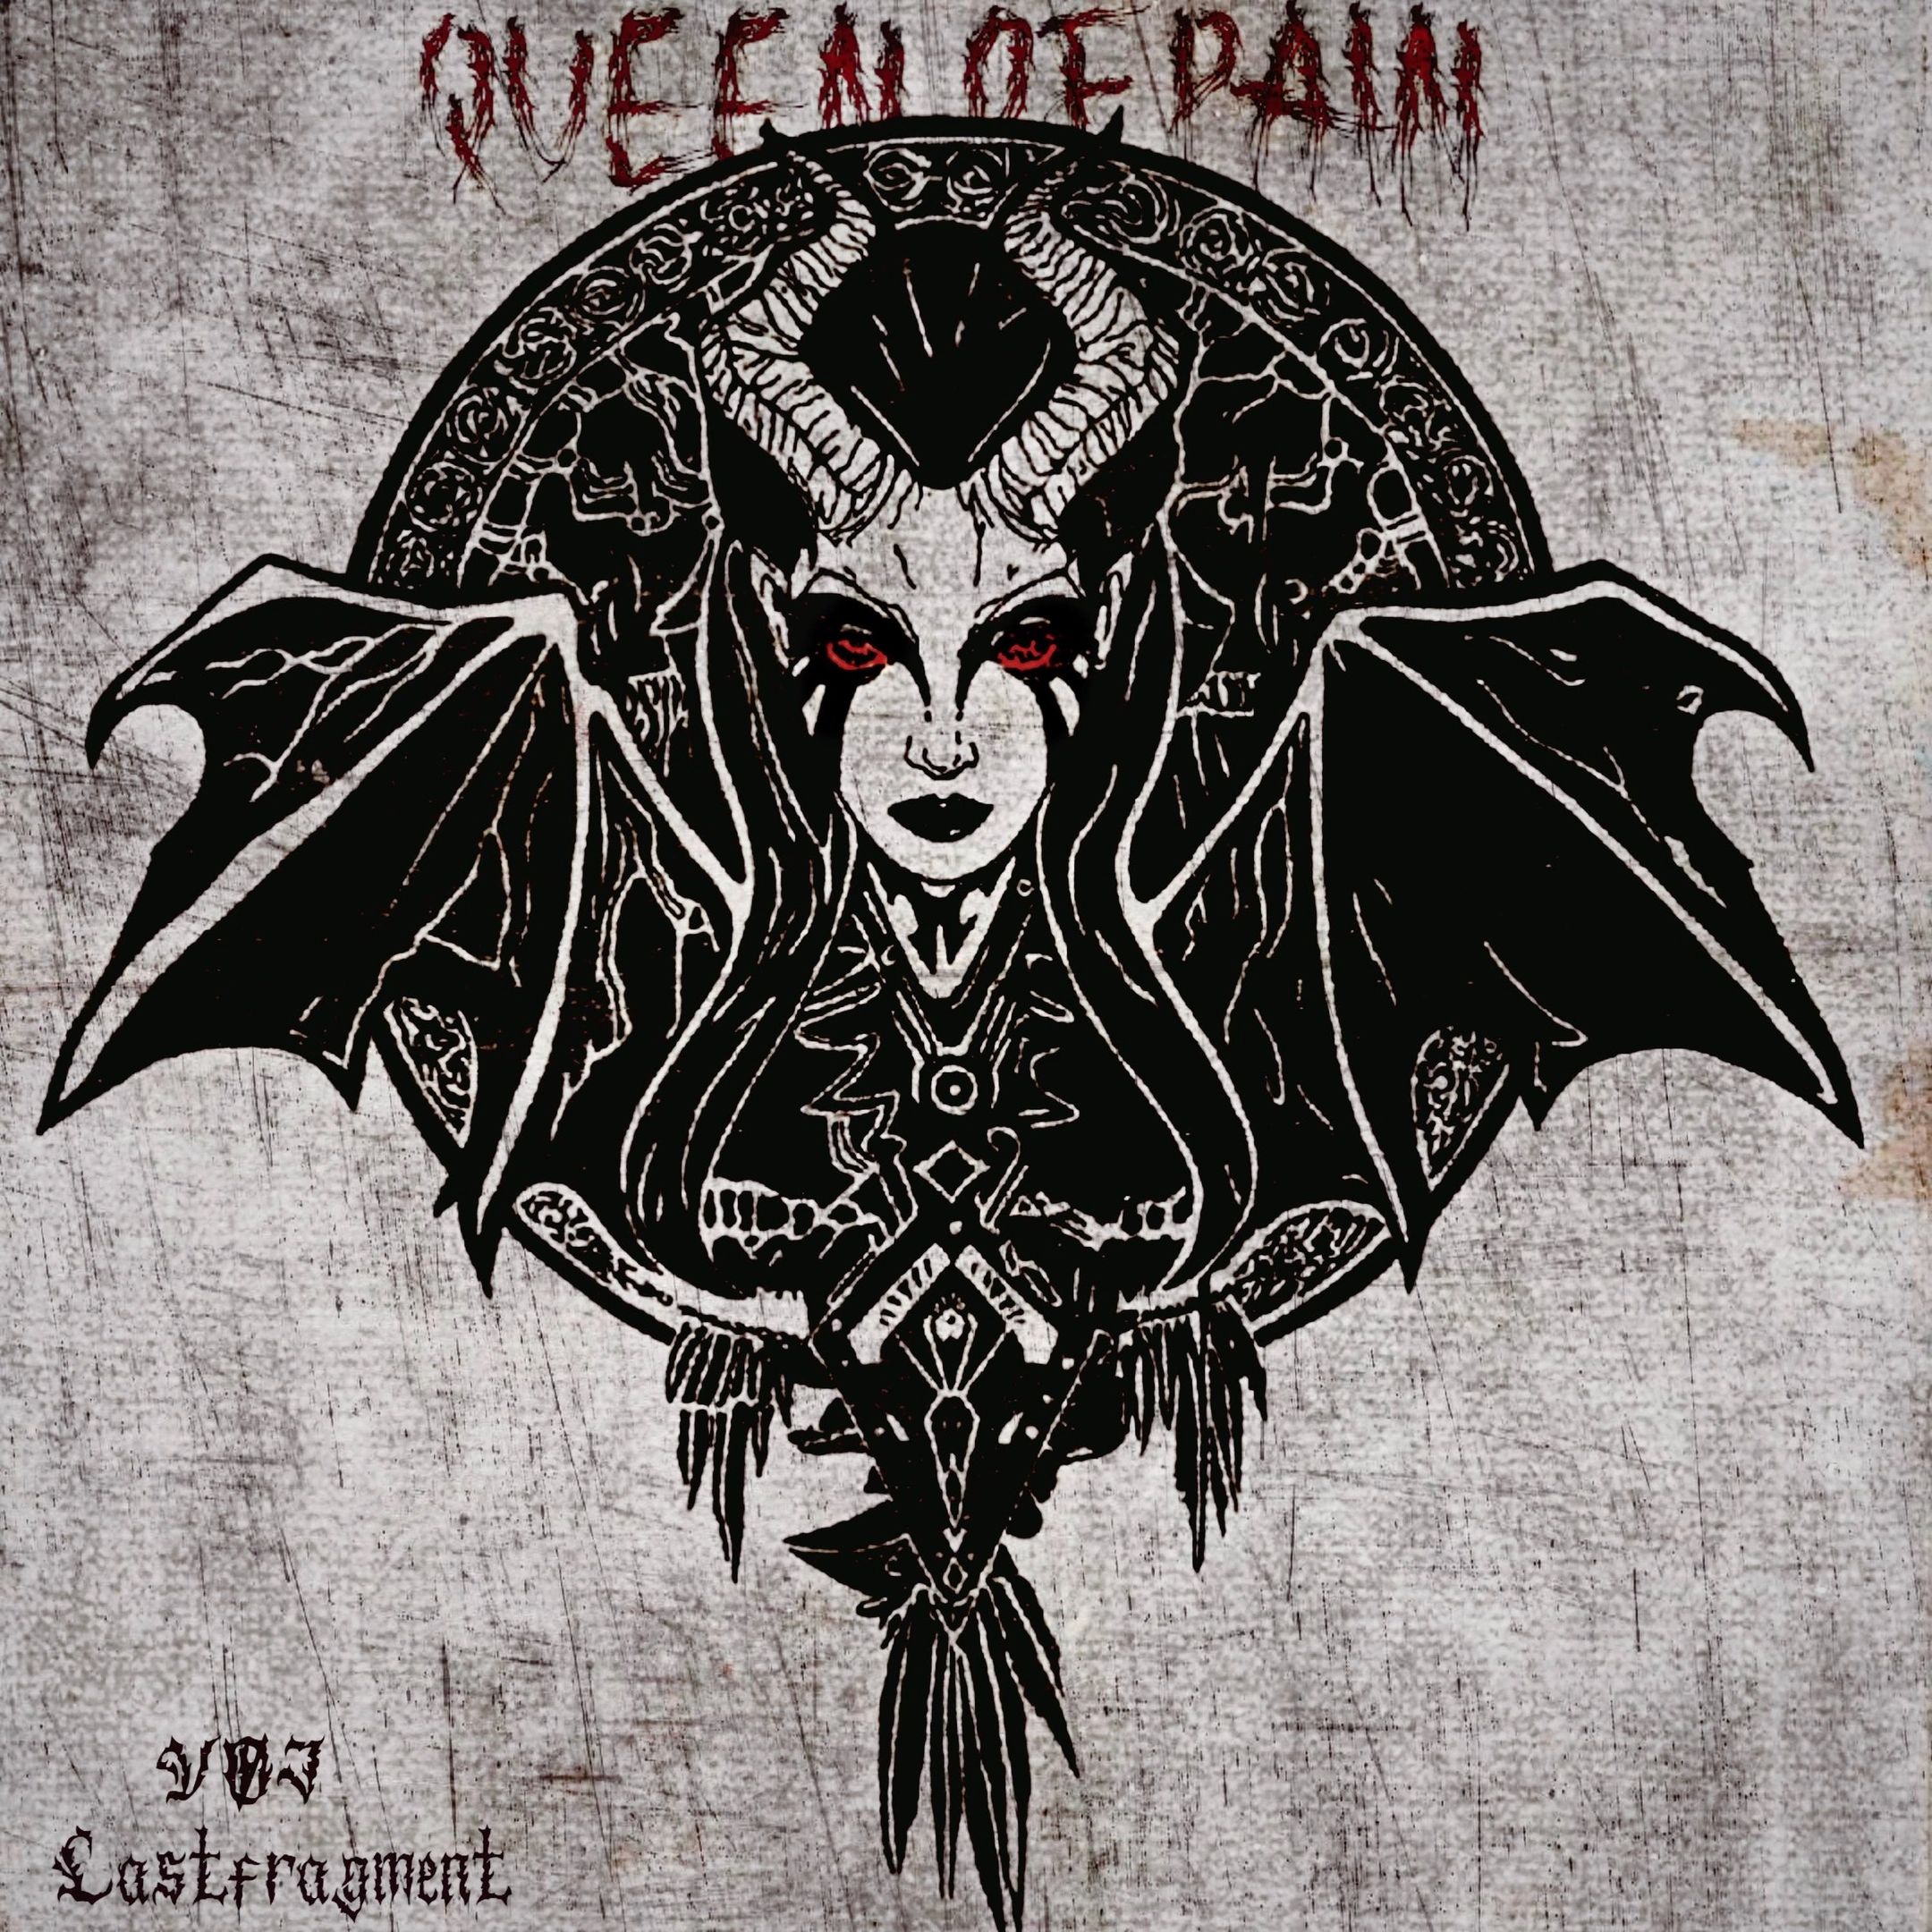 Descarca VØJ & Lastfragment - Queen of Pain